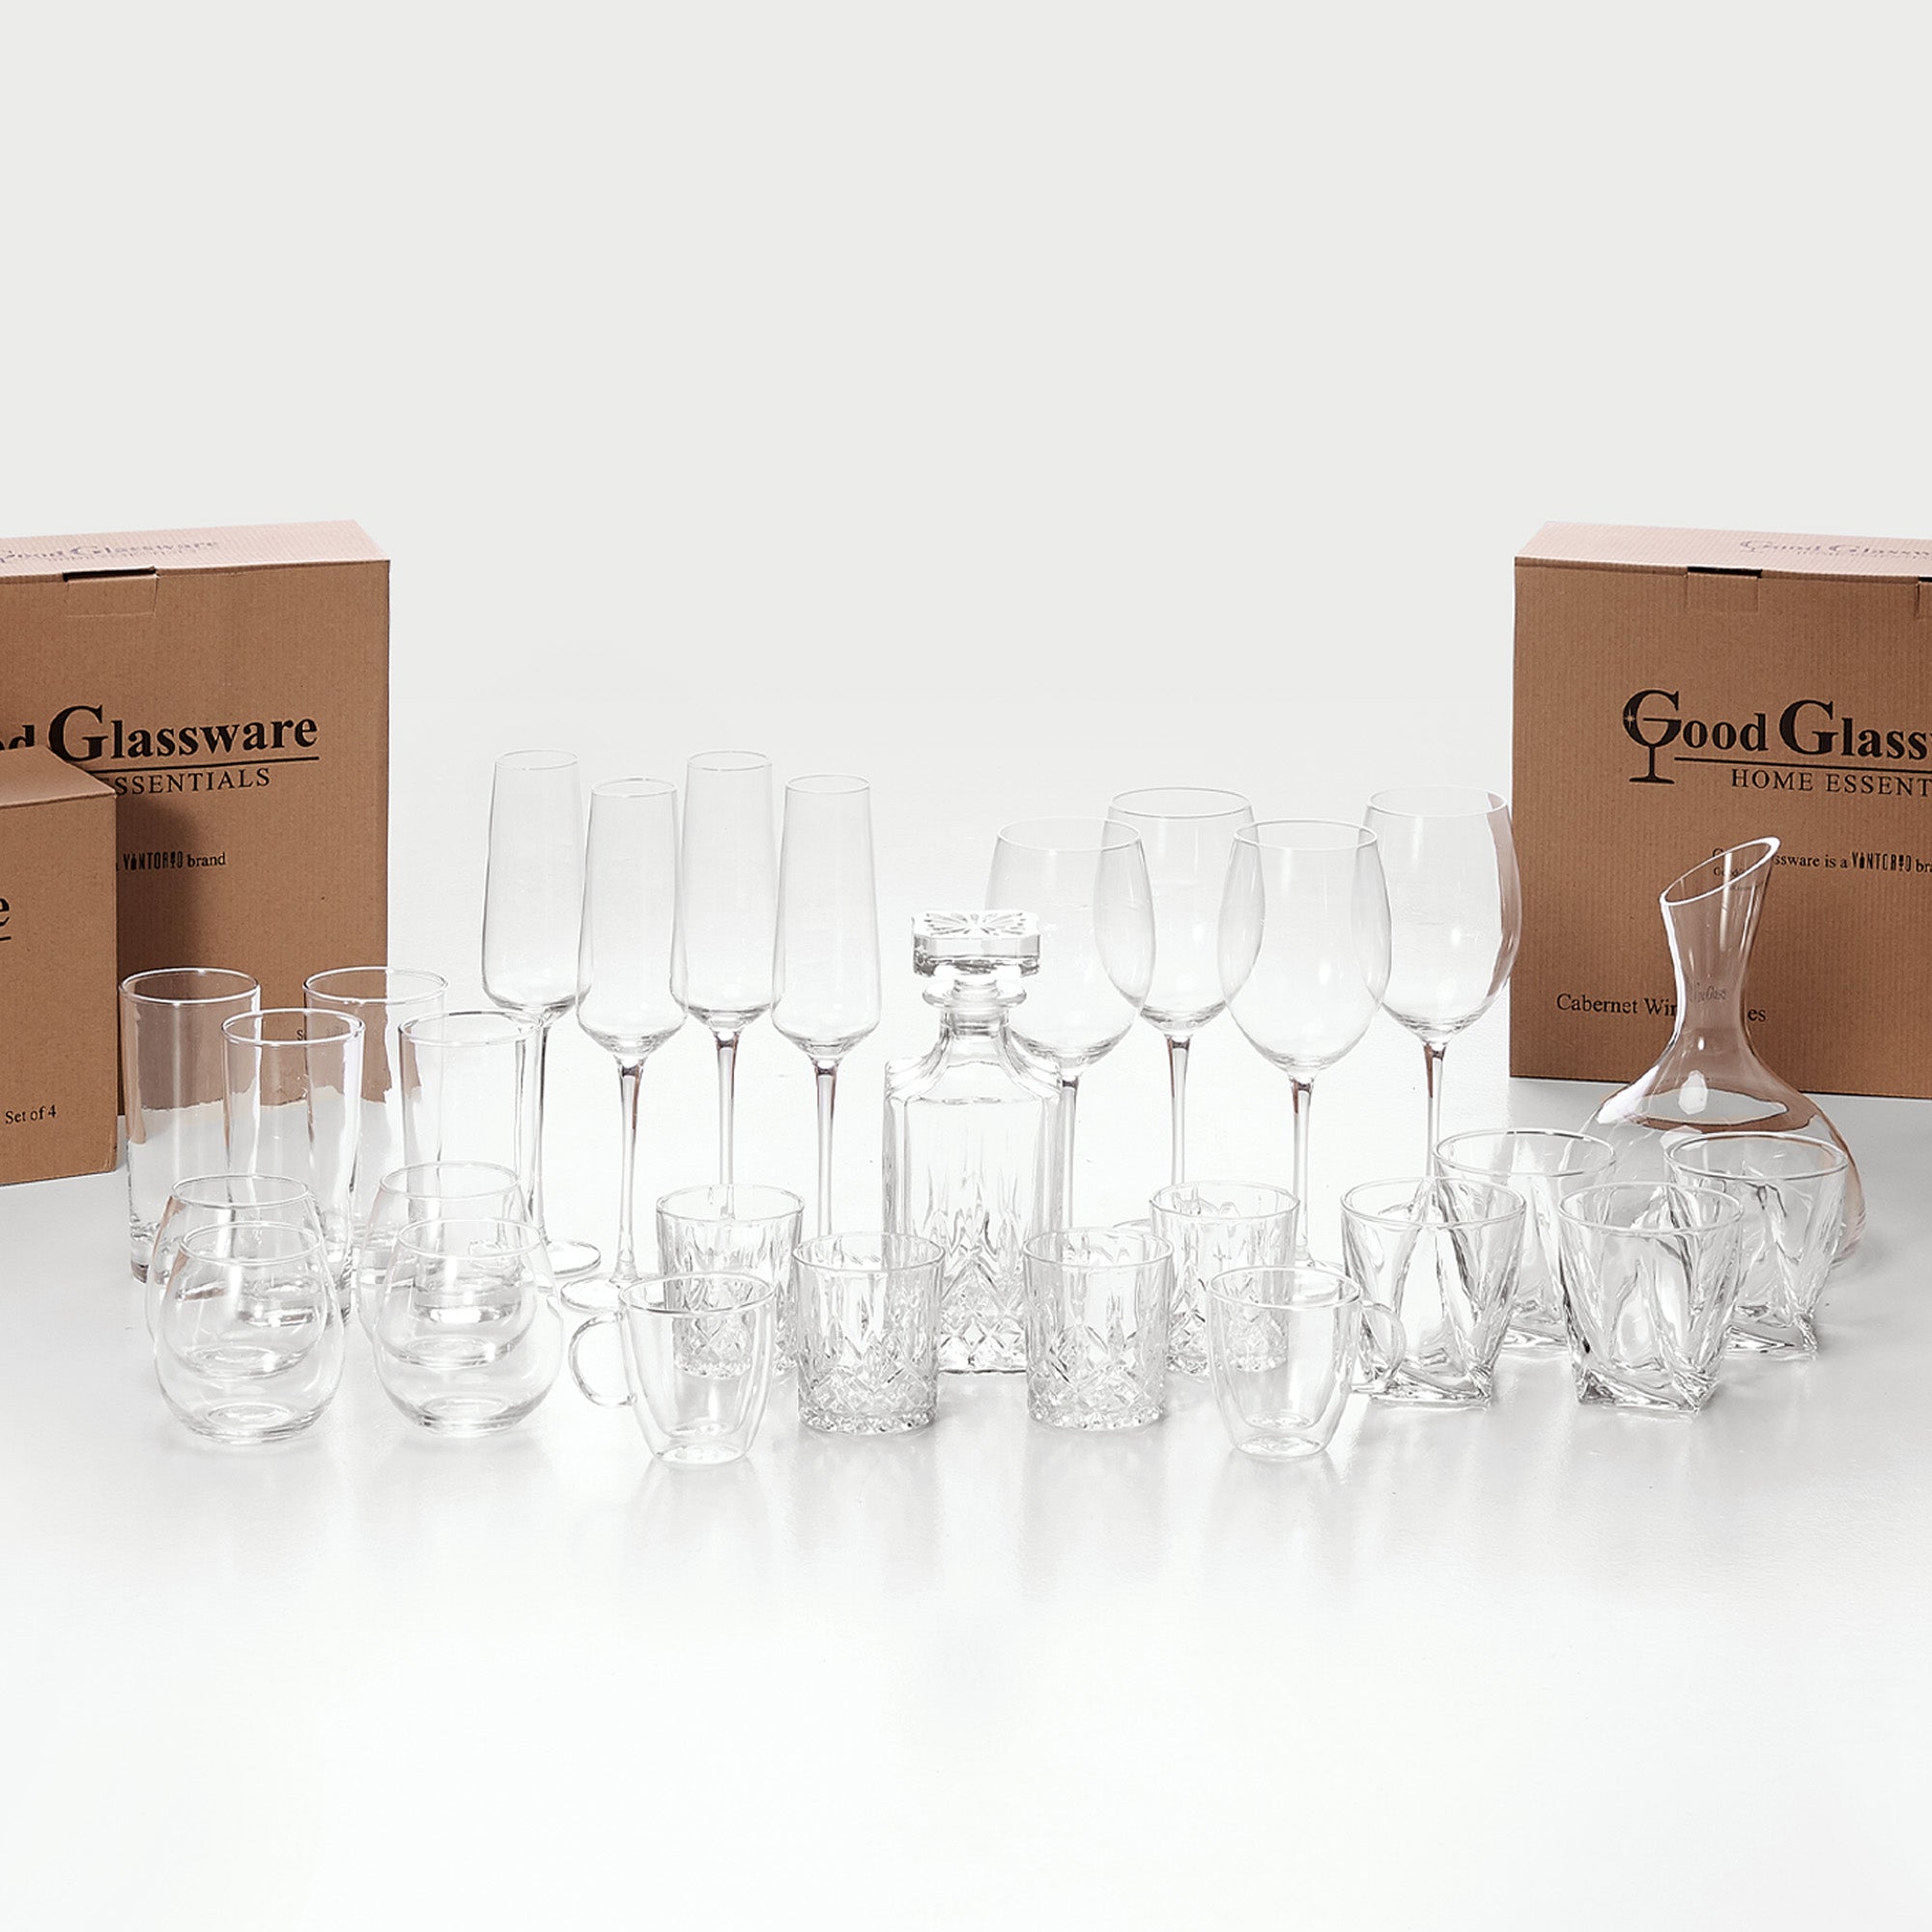  Eparé 4 oz Glass Espresso Cups - Set of 2 - Insulated